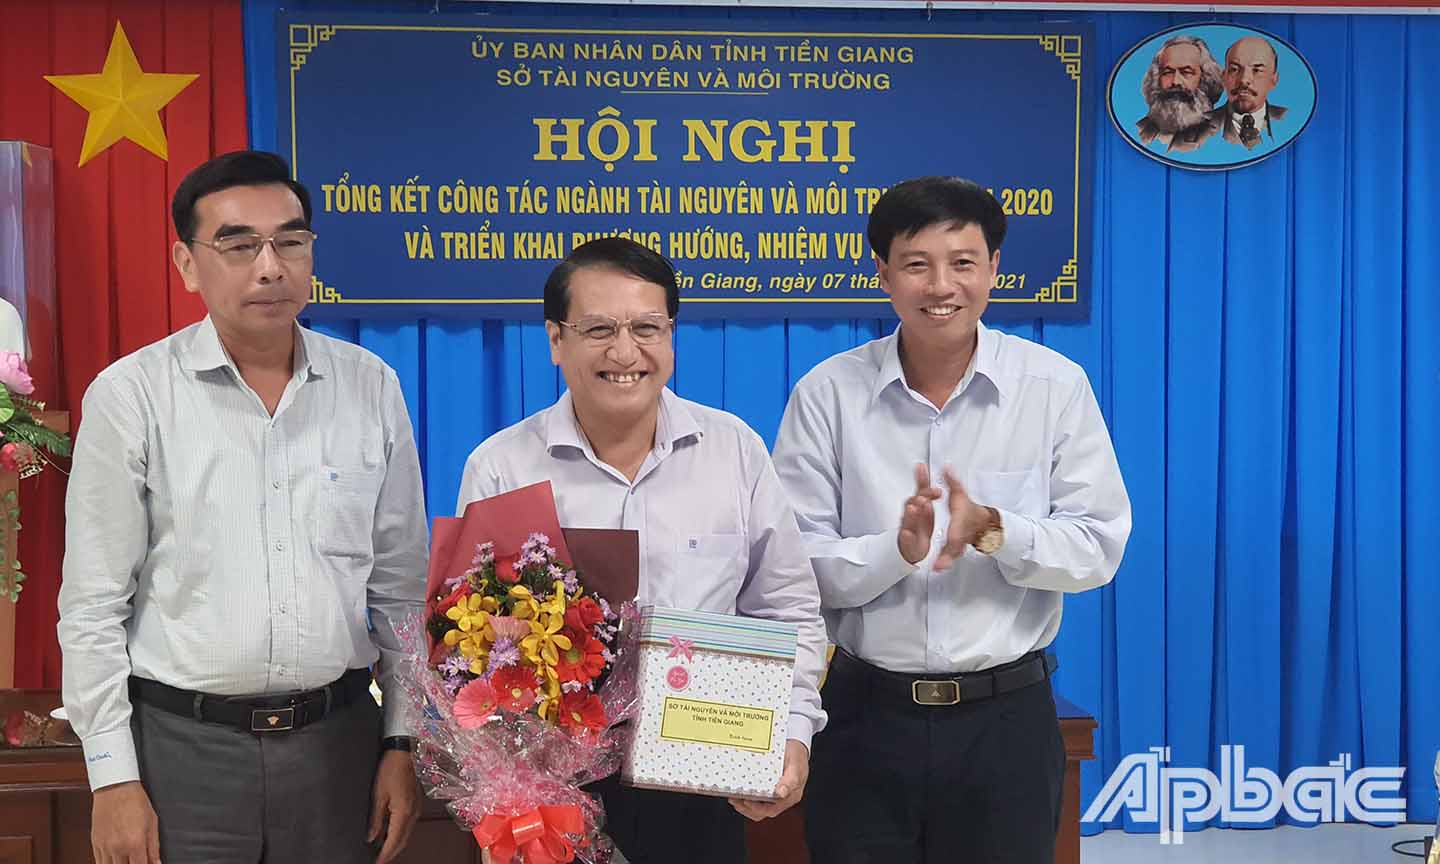 Lãnh đạo Sở TN&MT tặng quà nhằm ghi nhận những đóng góp của đồng chí Phạm Văn Trọng trong thời gian công tác tại Sở TN&MT.